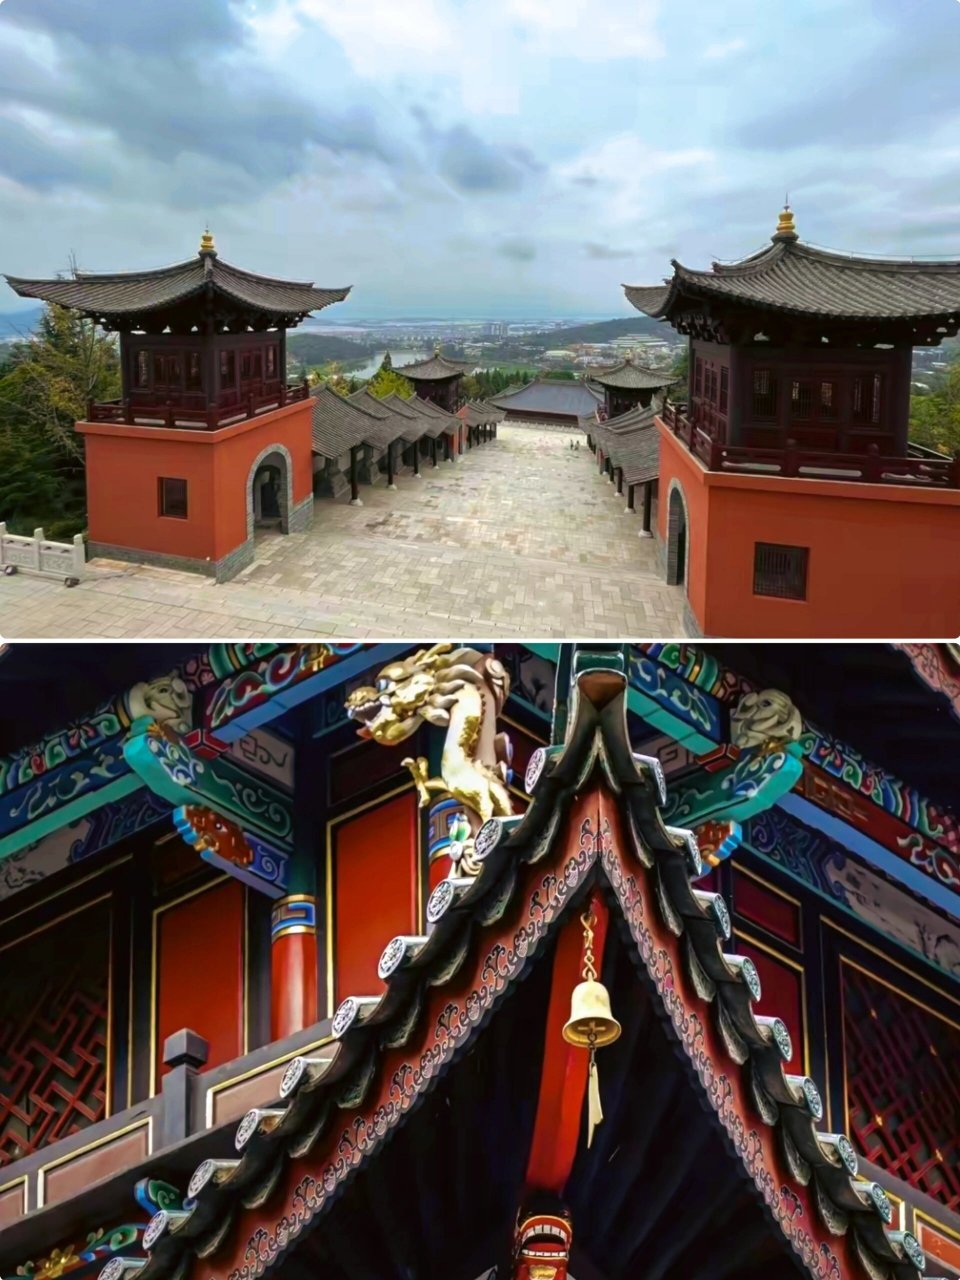 90盘龙寺,是昆明香火最旺的寺院之一,它位于滇池东岸晋宁区盘龙山